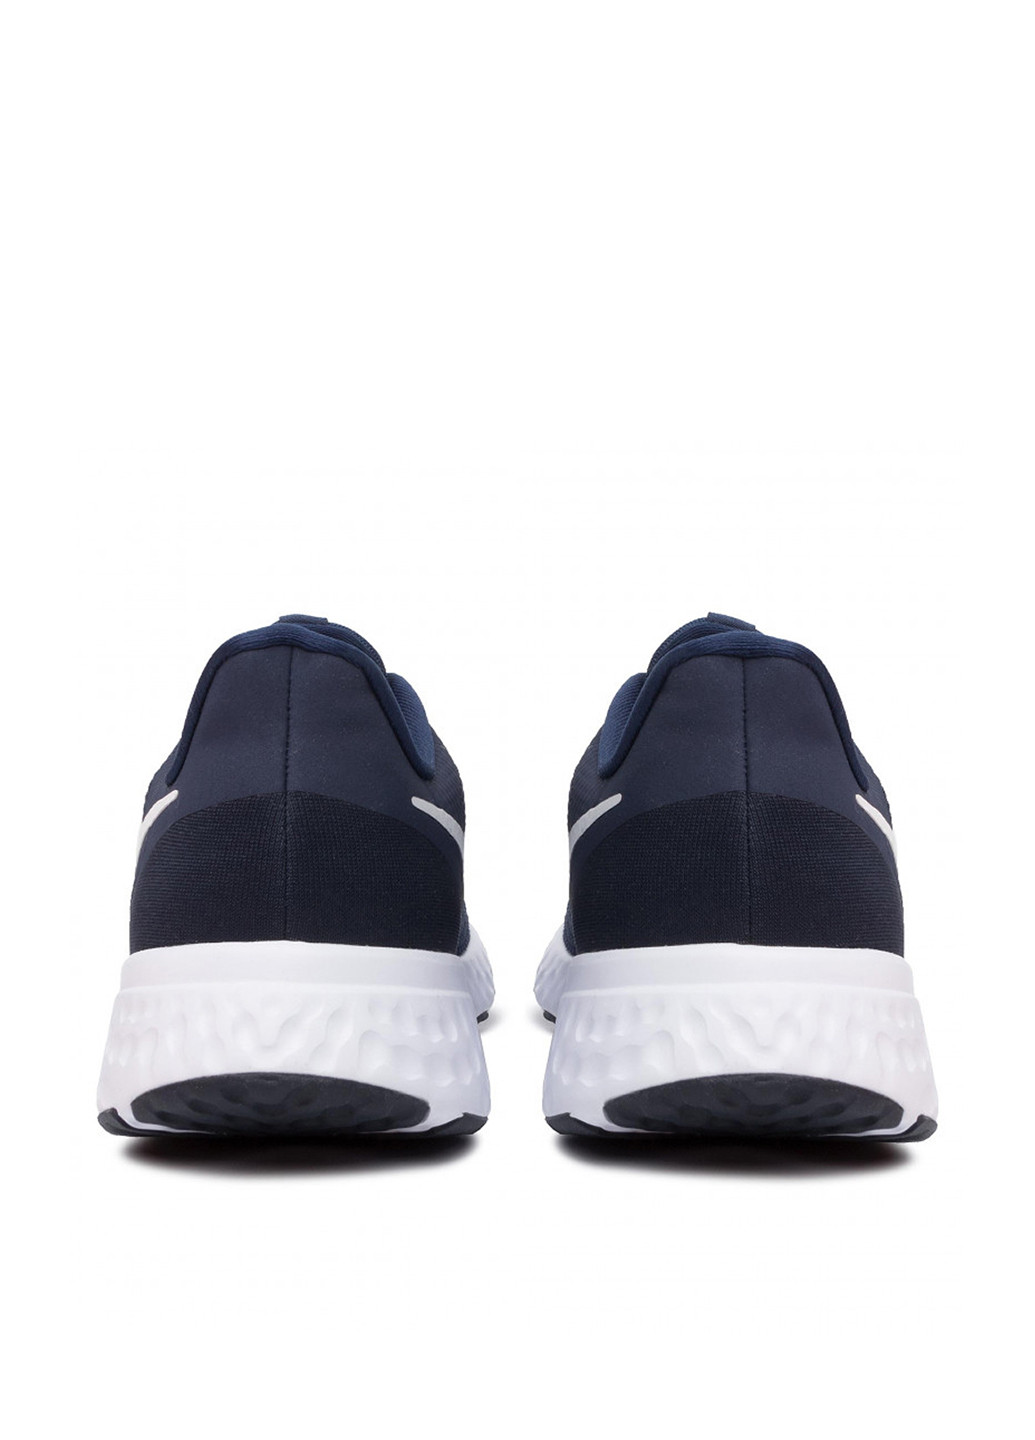 Синие всесезонные кроссовки Nike Revolution 5